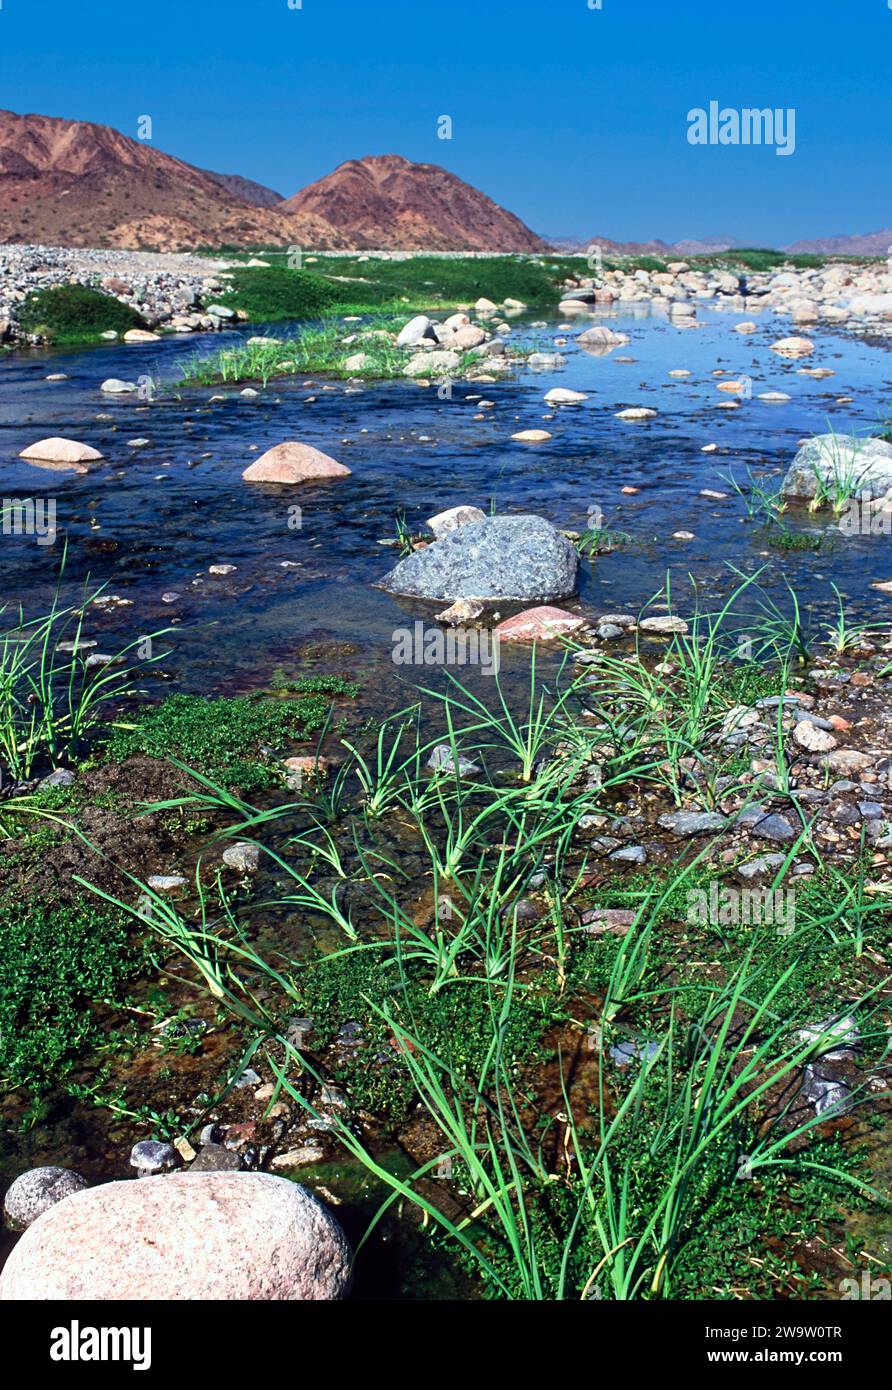 Rivière de source chaude d'Arabie Saoudite et plantes vertes entourées de collines désertiques Banque D'Images